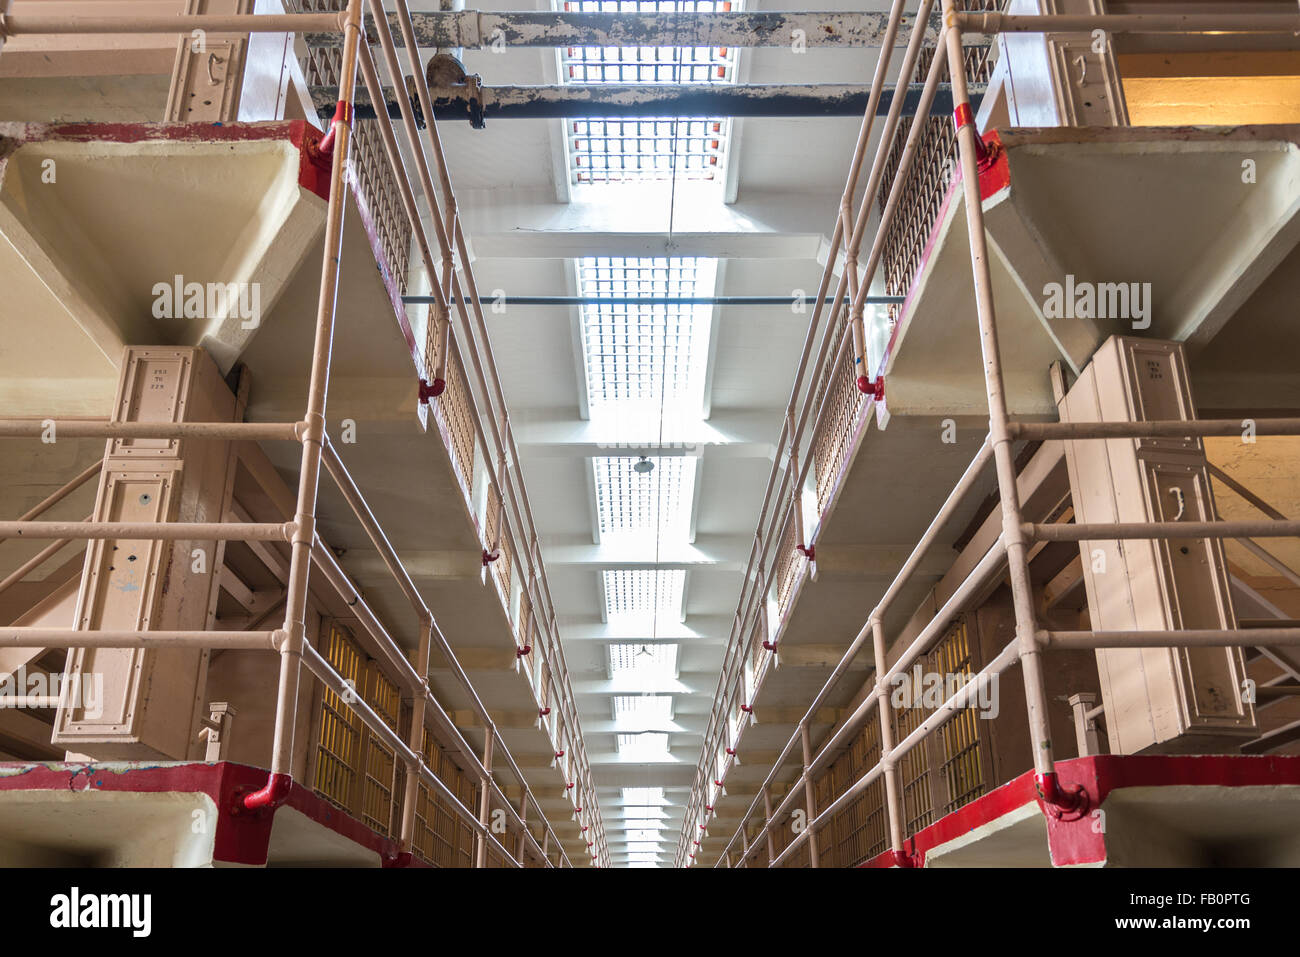 Cell block interior at Alcatraz prison Stock Photo